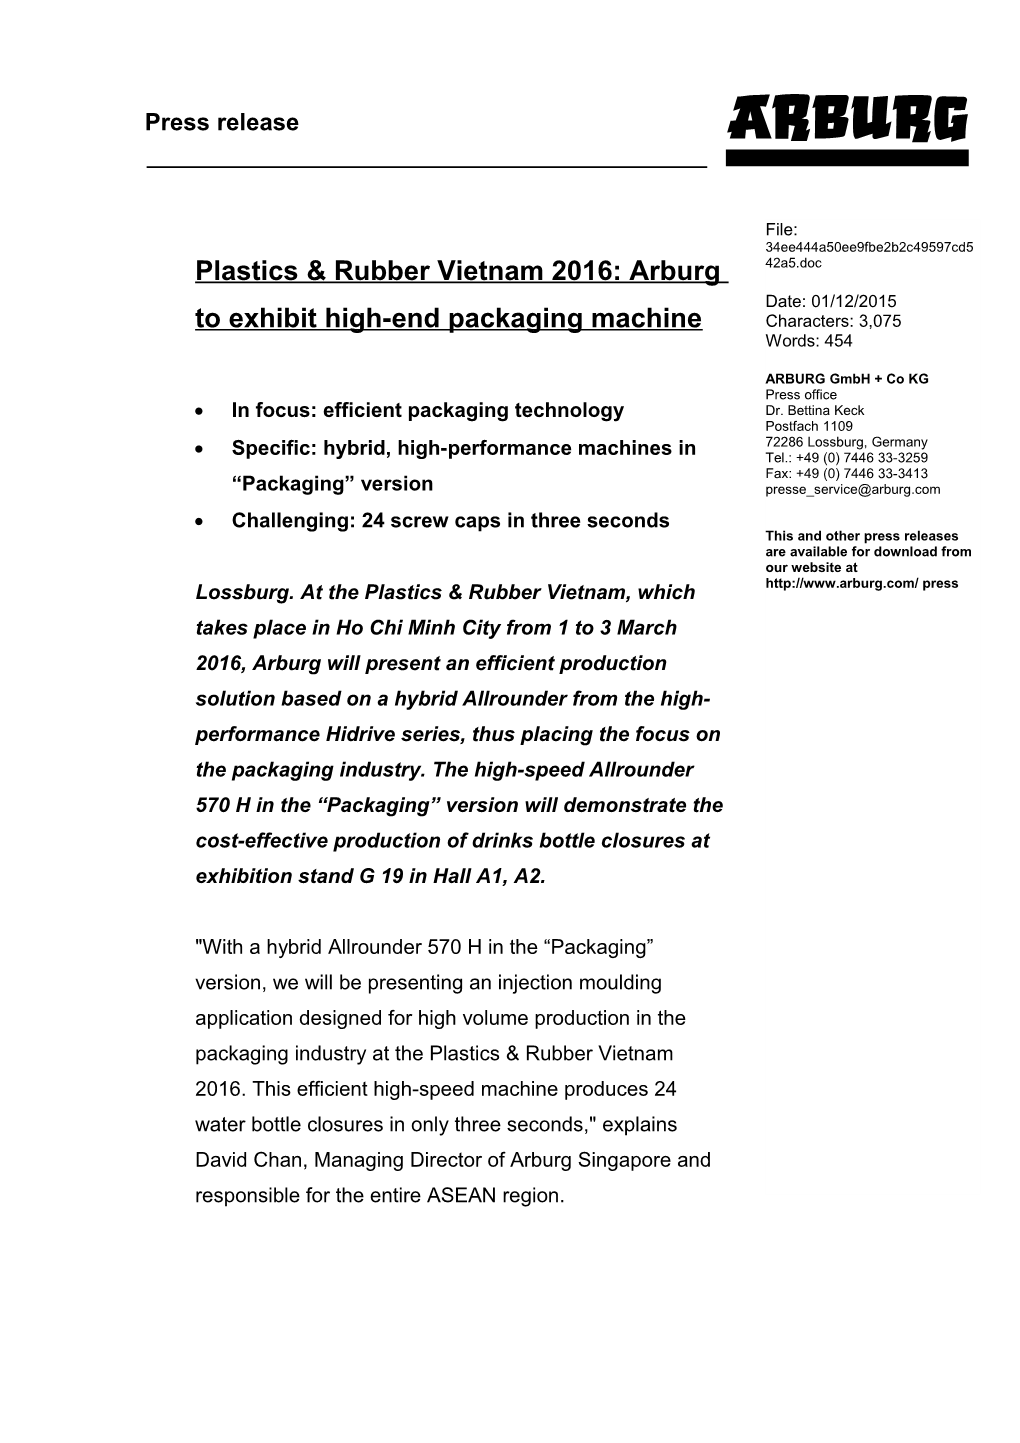 Plastics & Rubber Vietnam 2016: Arburg to Exhibit High-End Packaging Machine